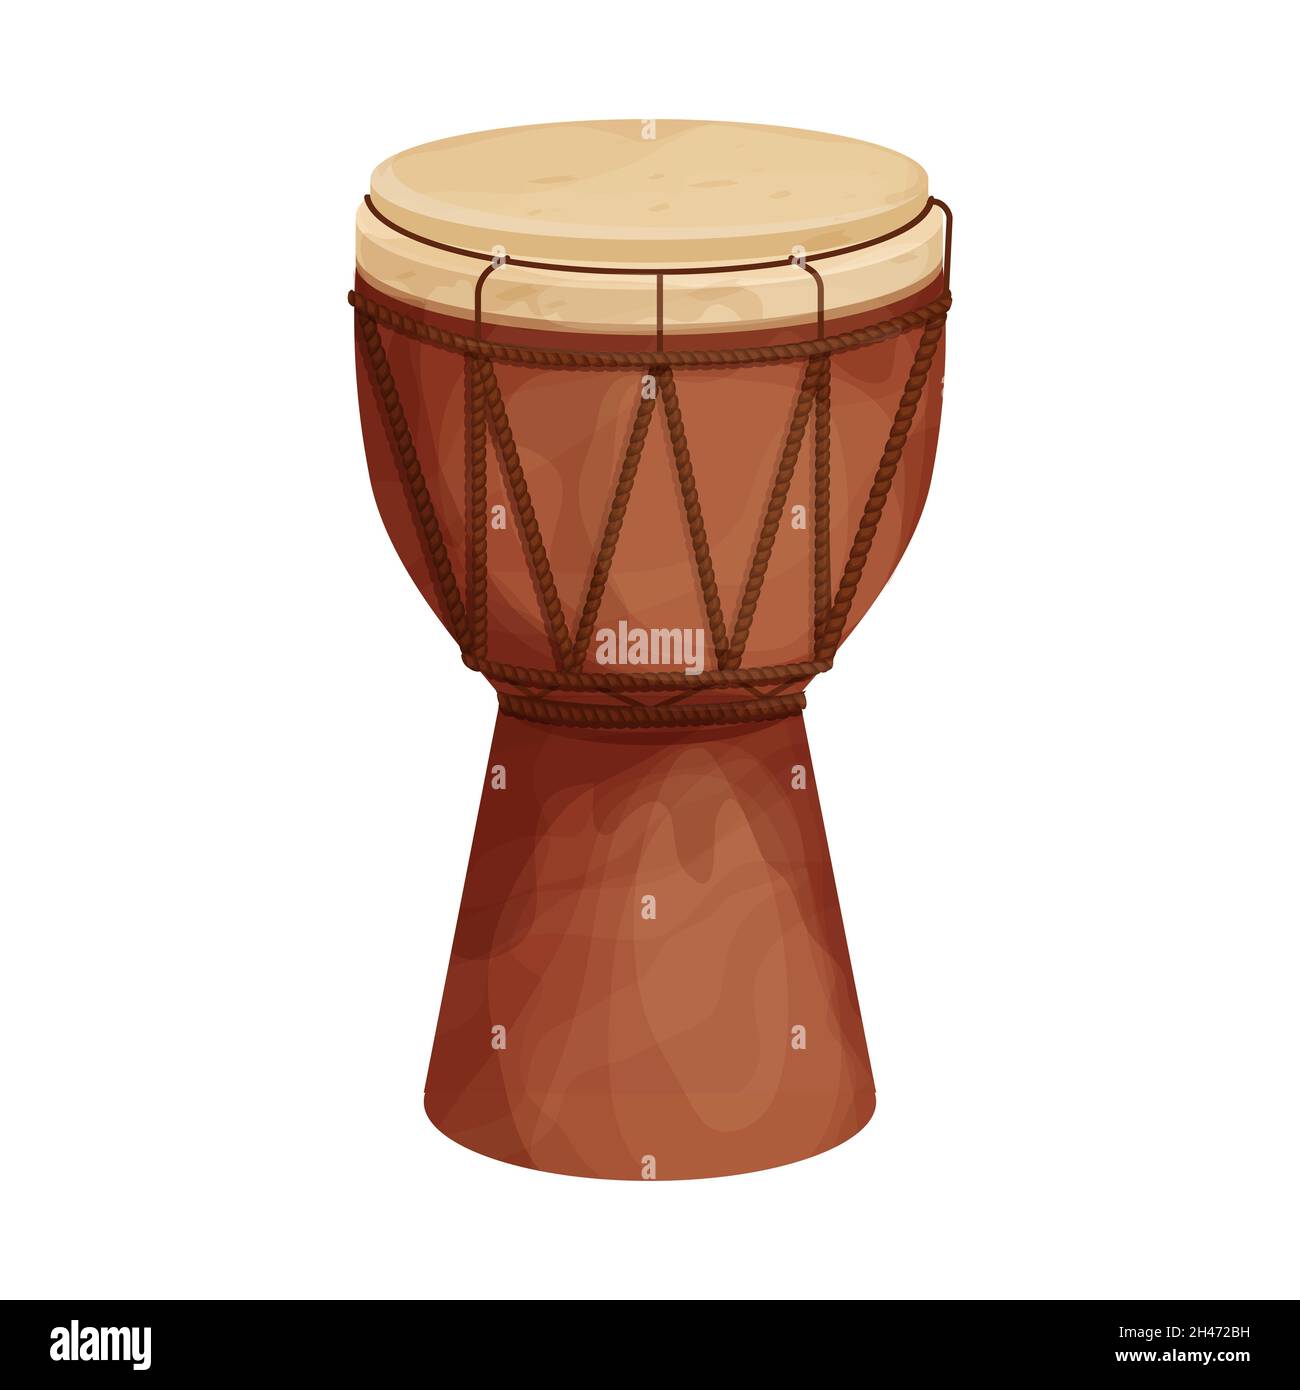 Tambour djembe africain de style dessin animé isolé sur fond blanc.Instrument de musique ethnique et traditionnel.Illustration vectorielle Illustration de Vecteur